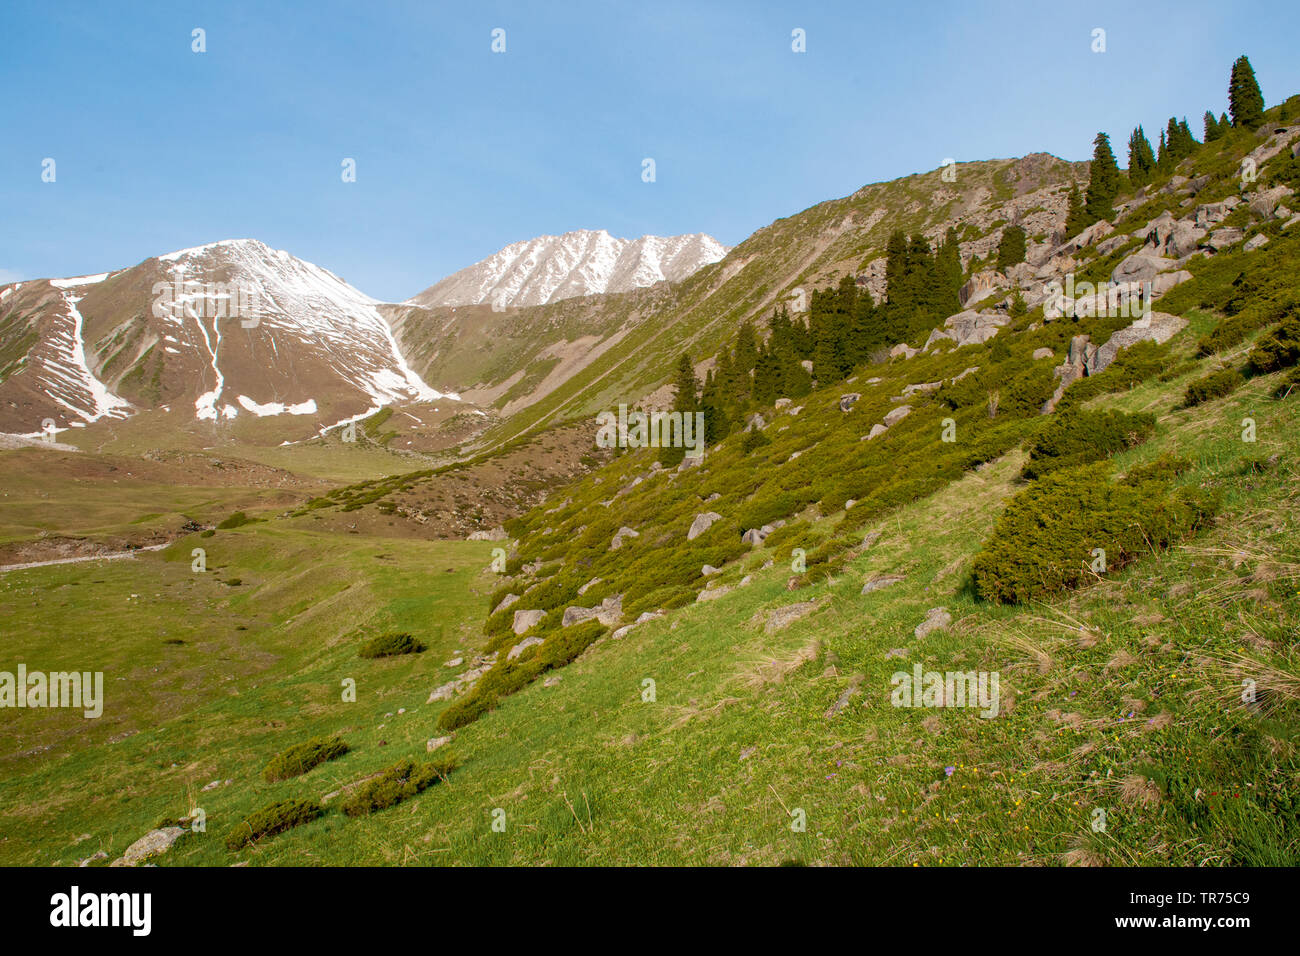 Alpine meadows and mountain slopes, Kazakhstan Stock Photo